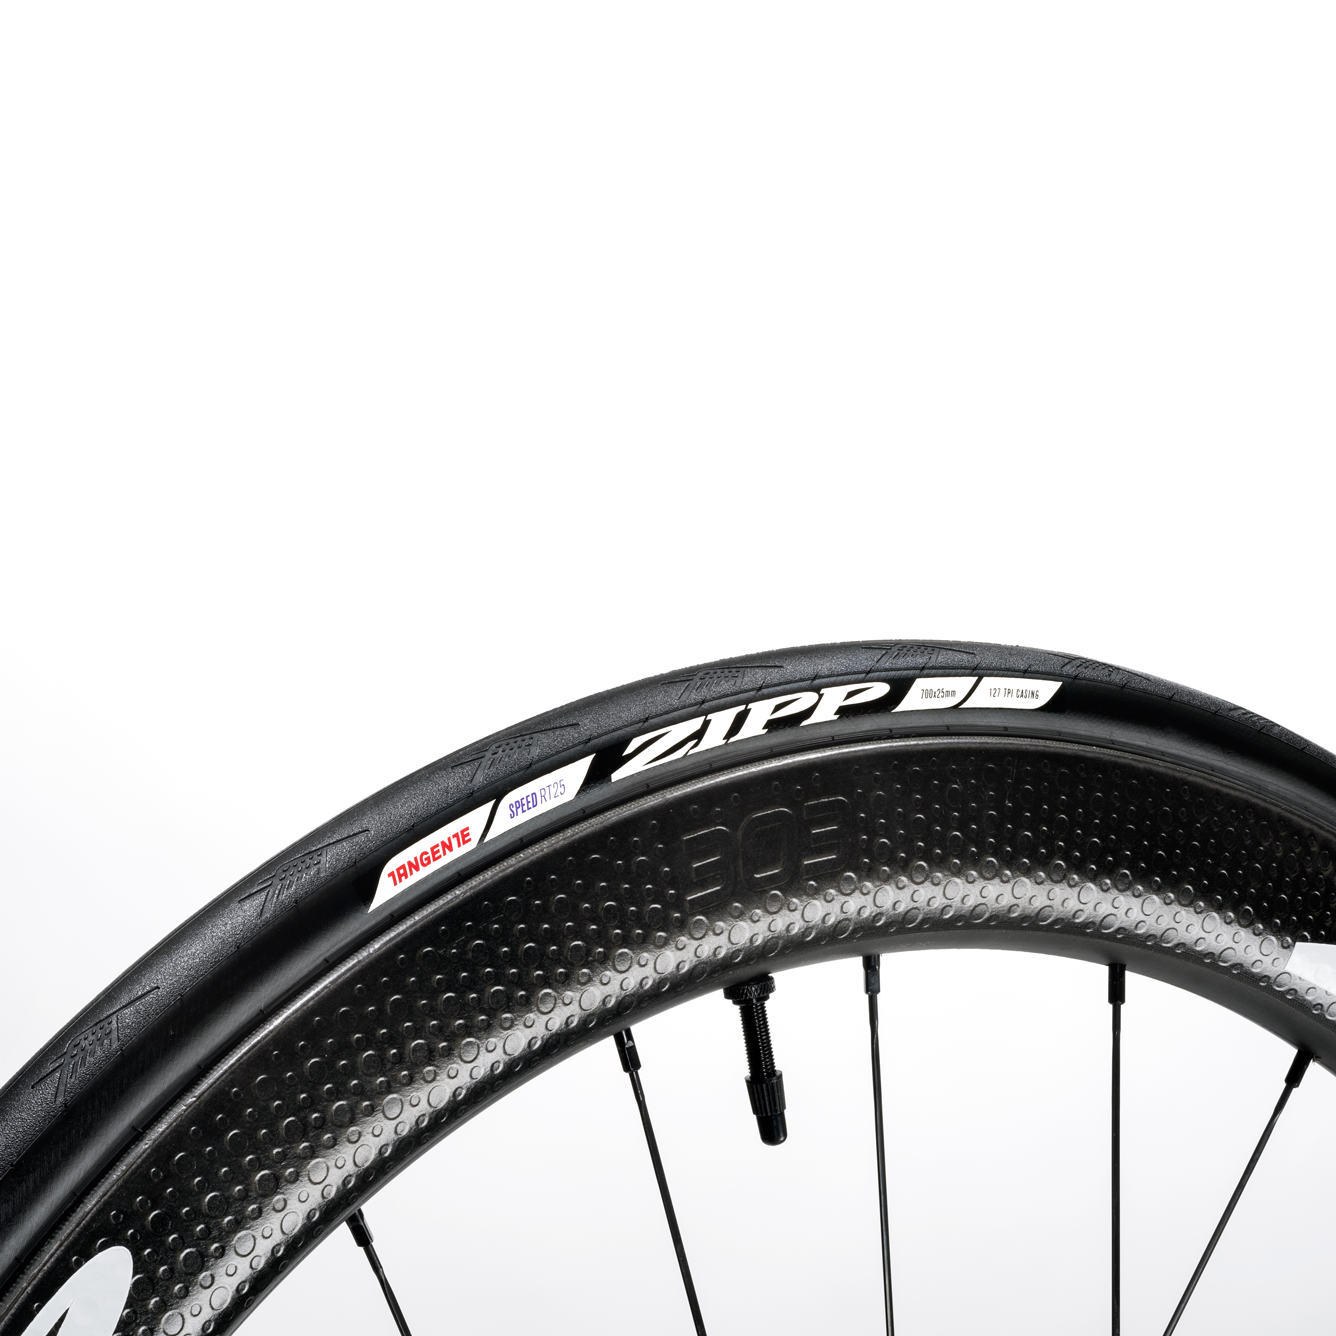 700x250 bike tire